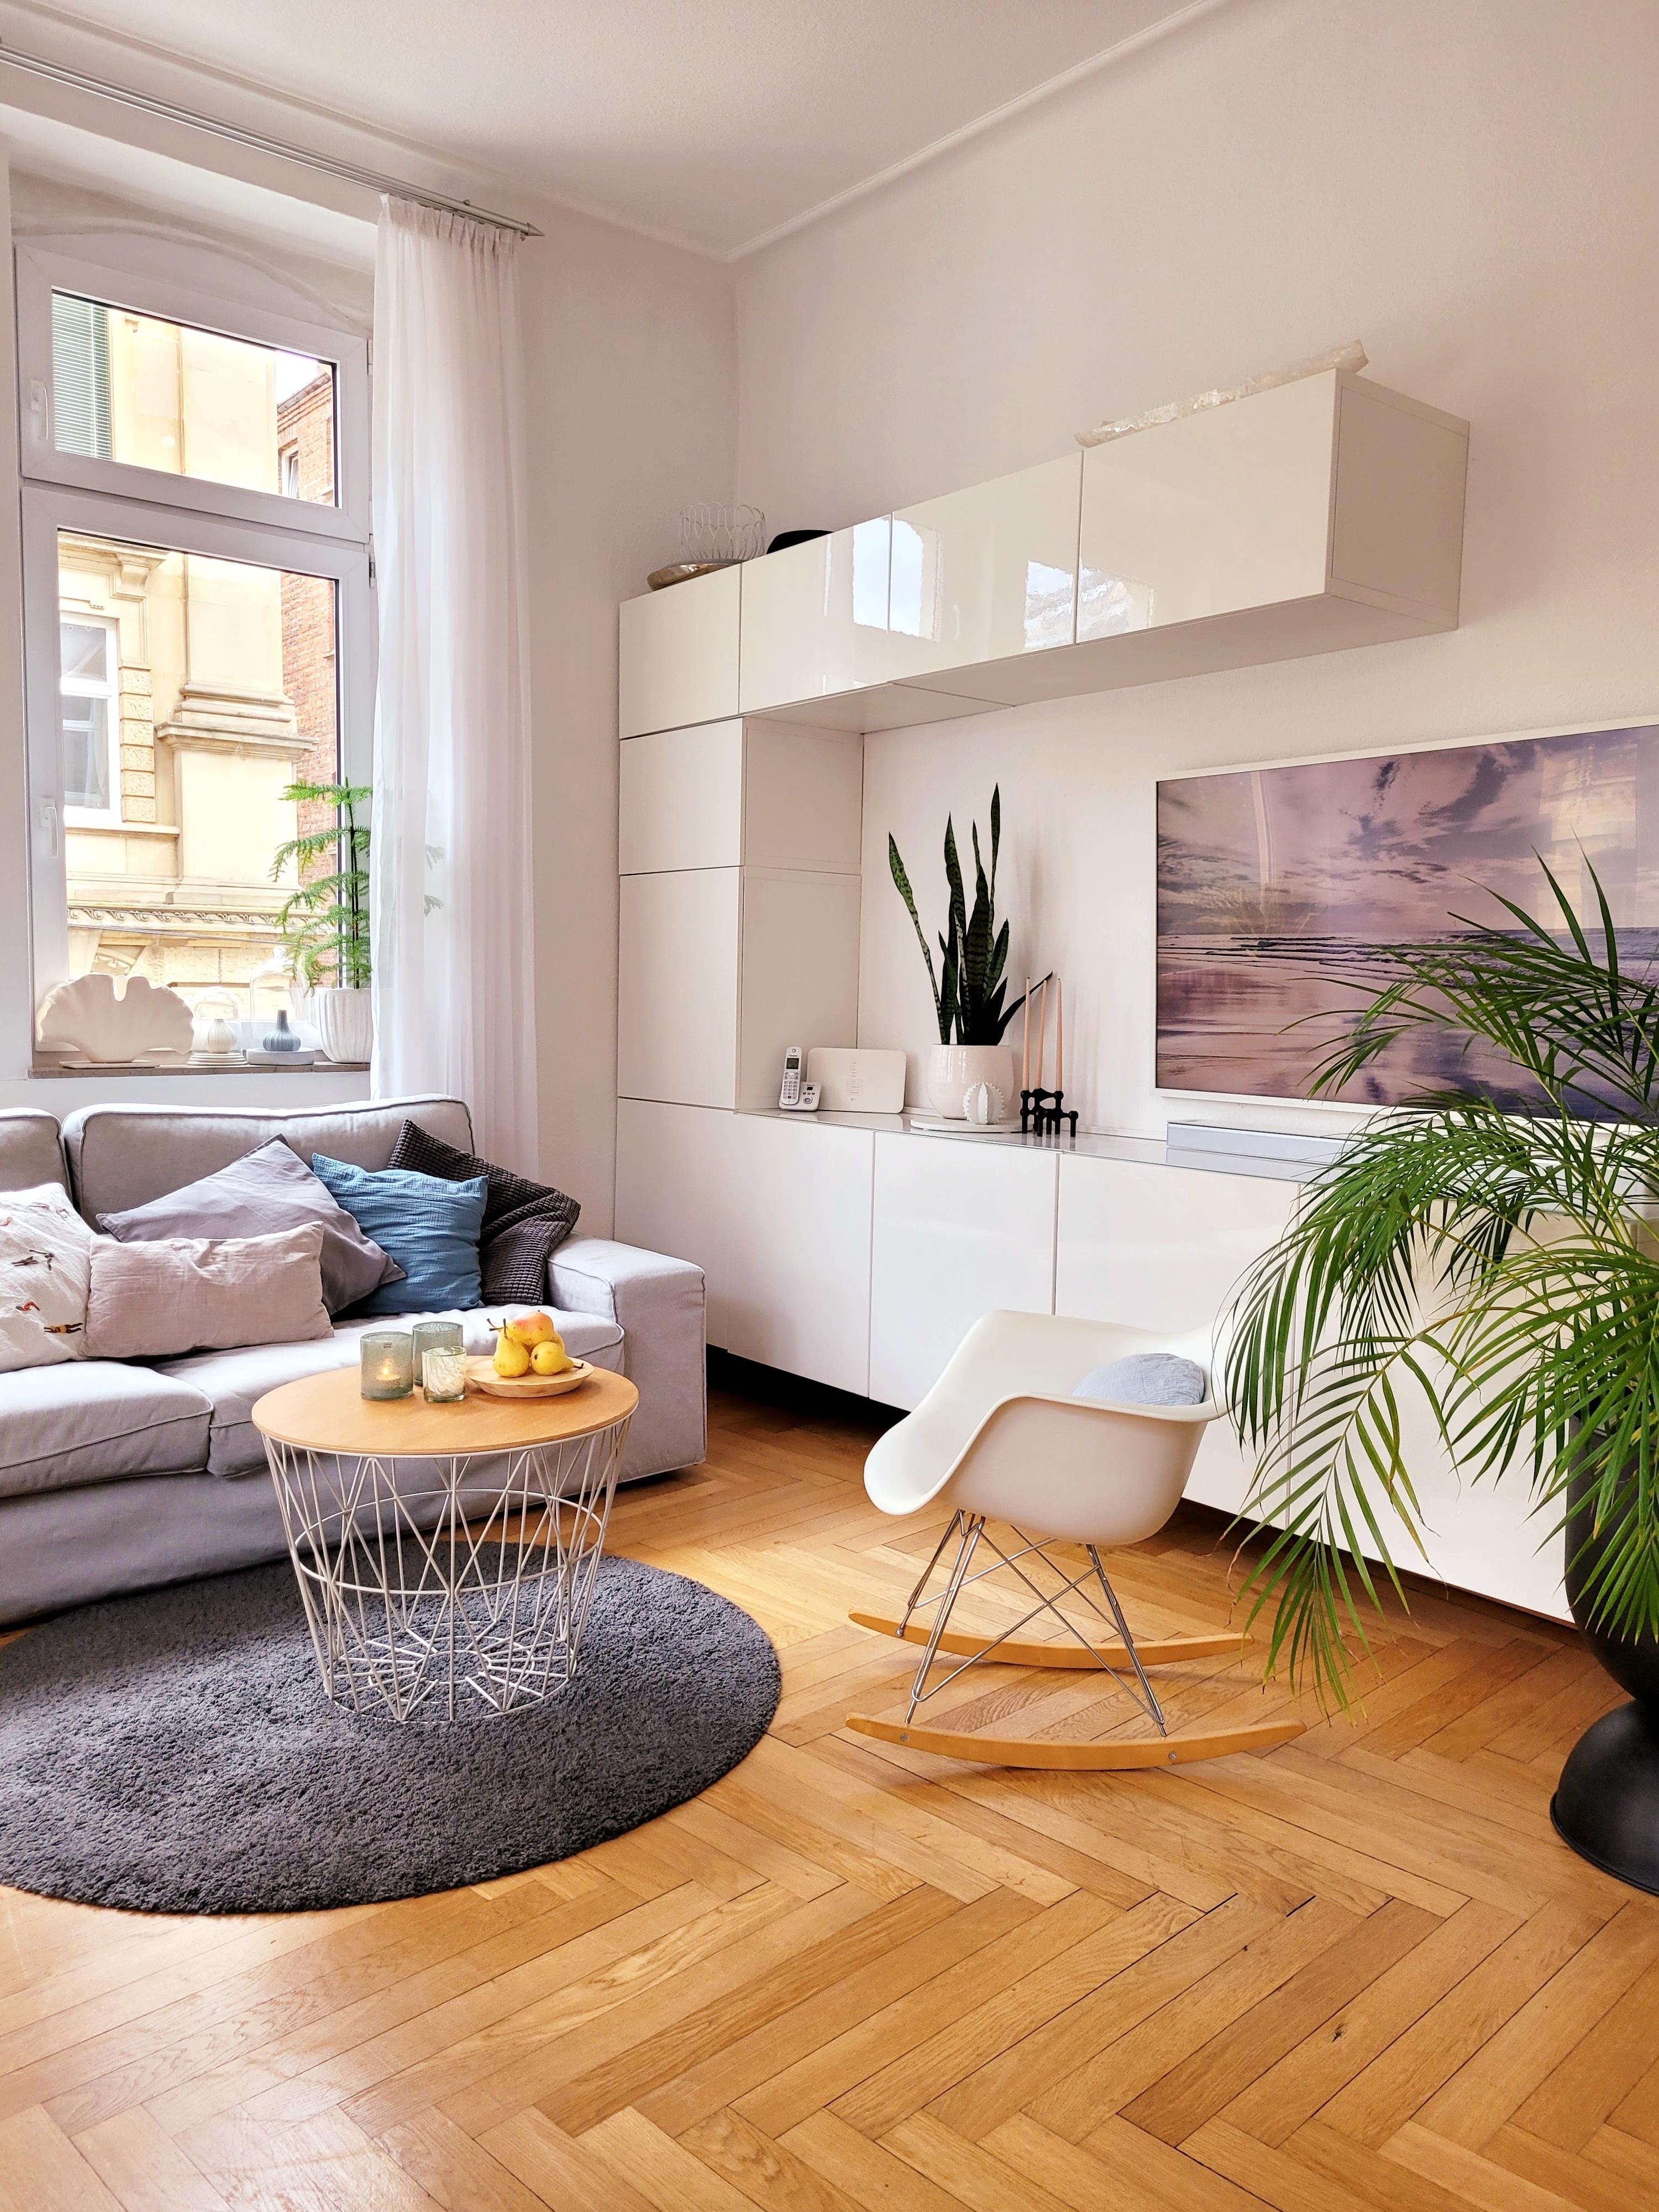 Entspannt durch den Sonntag!
#Altbau #Wohnzimmer #skandi #livingroom #Sofa #Fernseher #hygge 